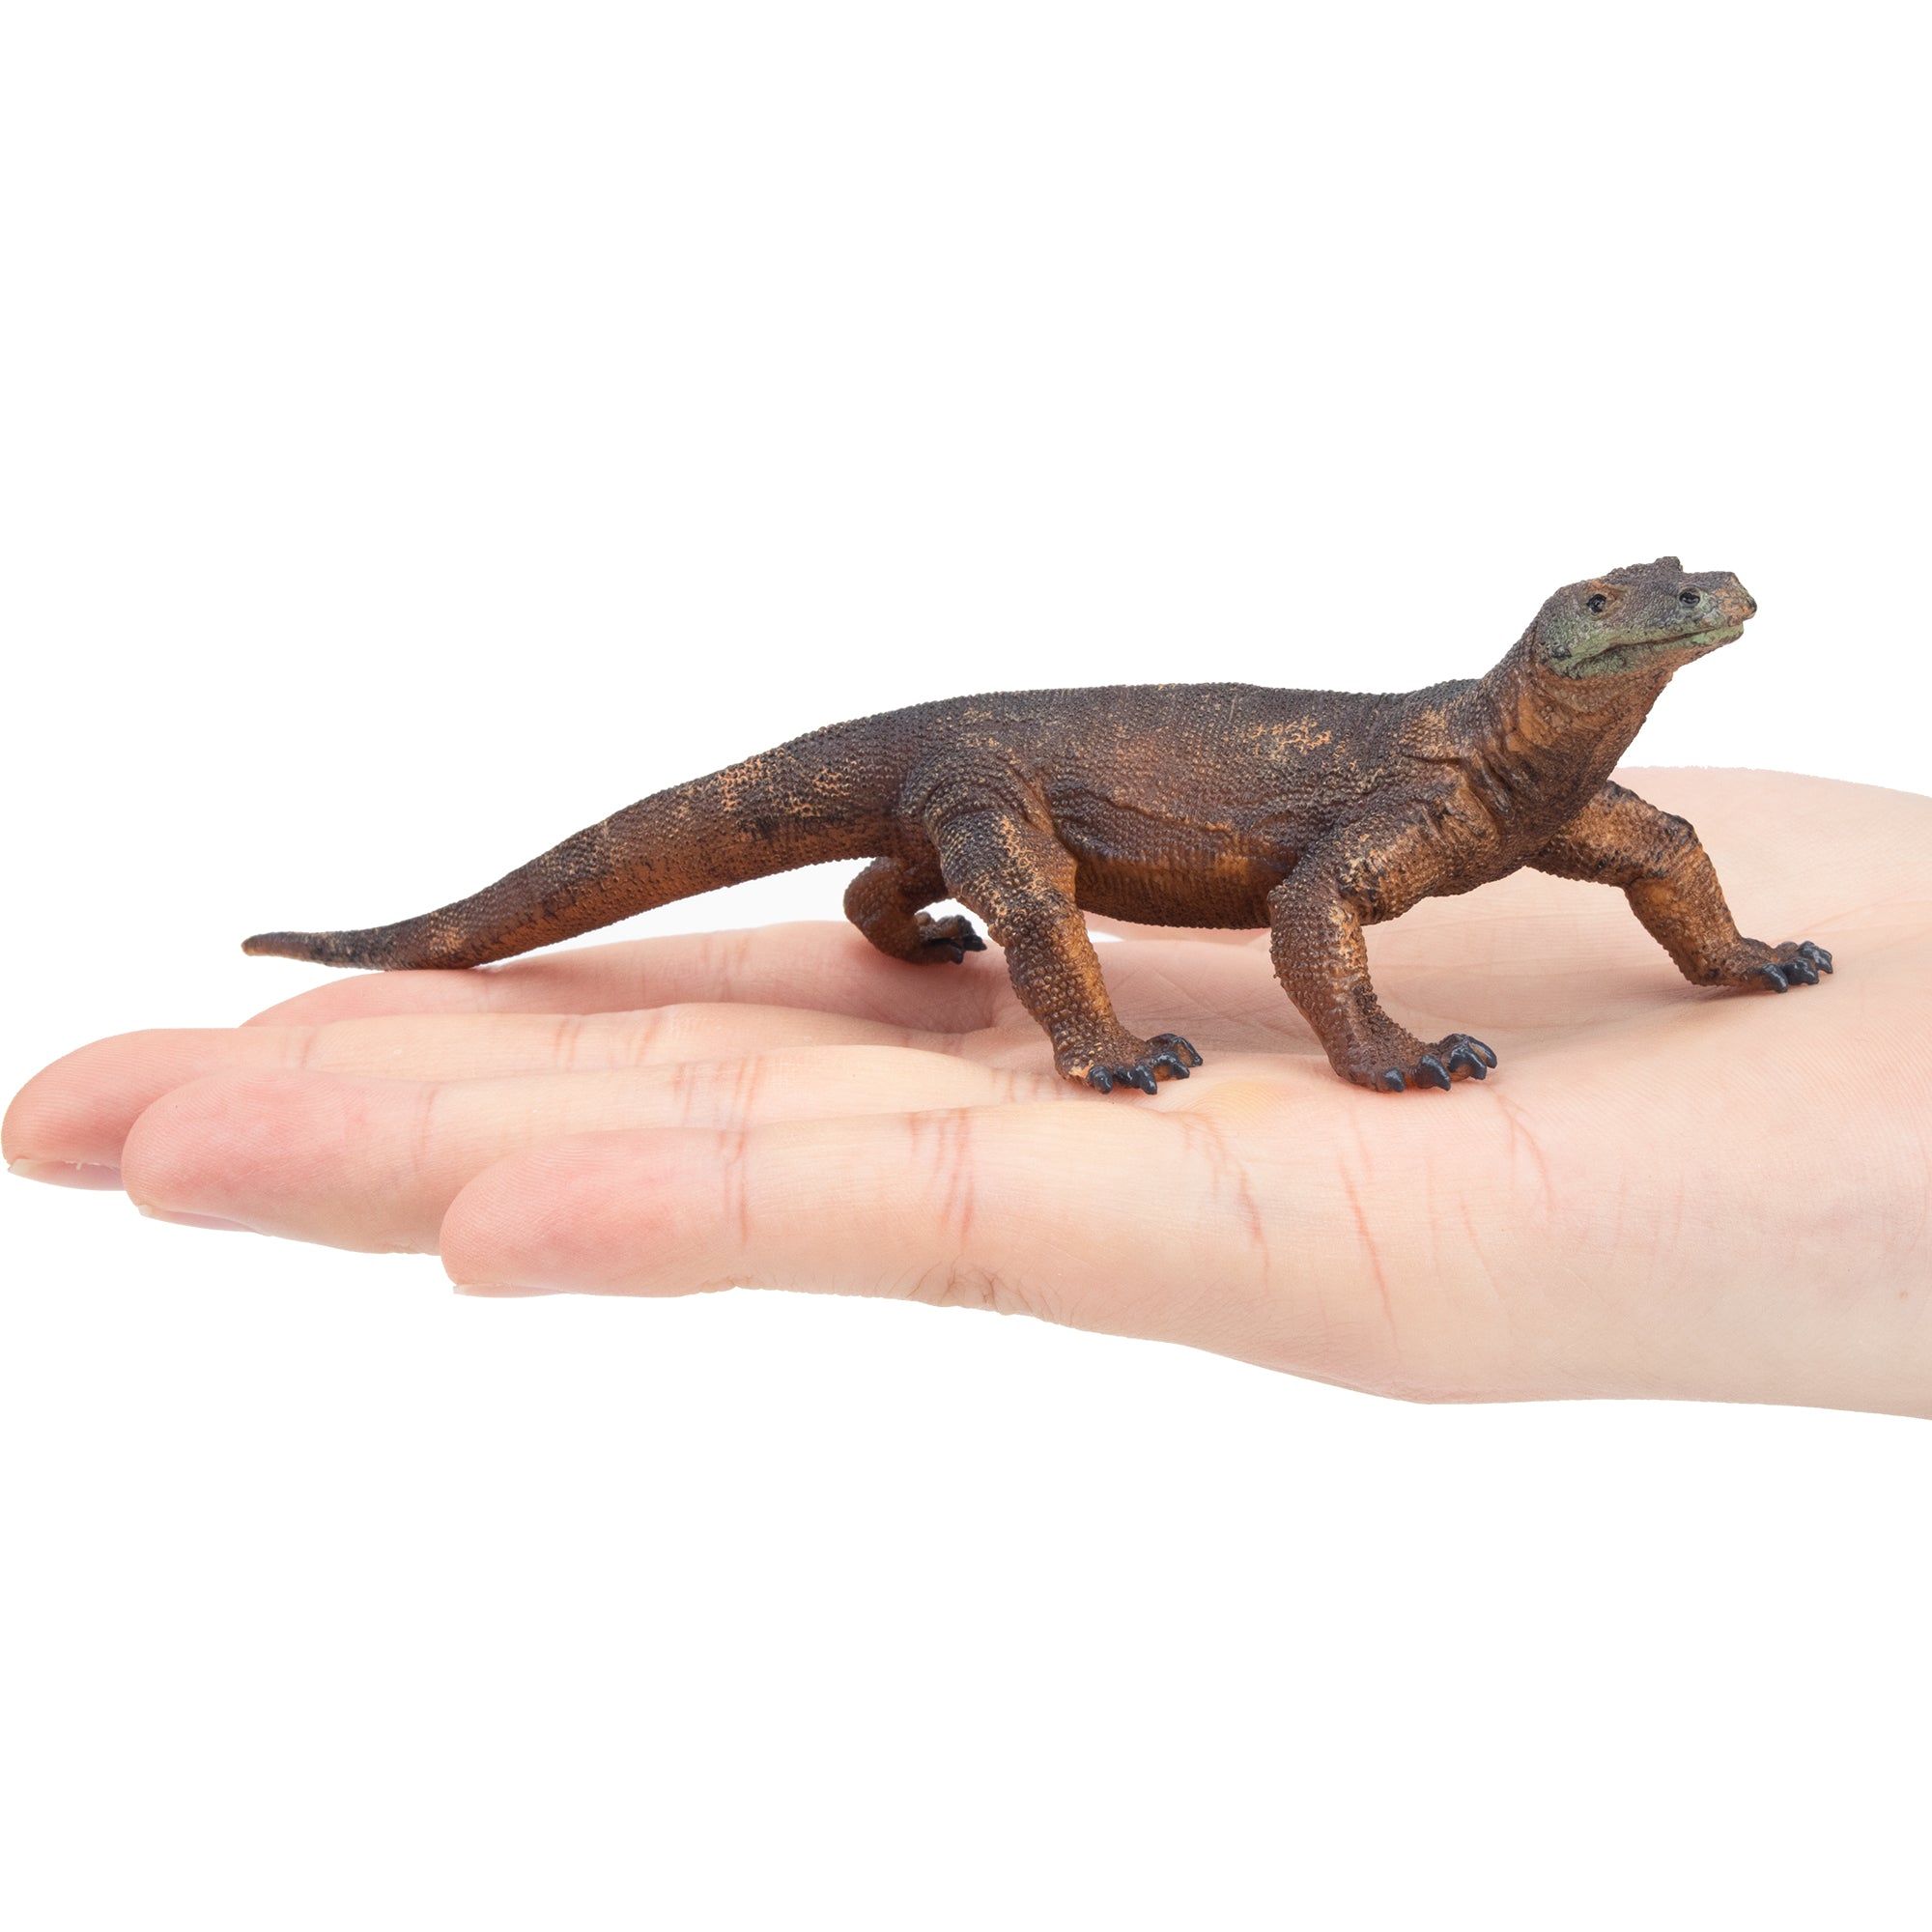 Toymany Komodo Dragon Figurine Toy-on hand